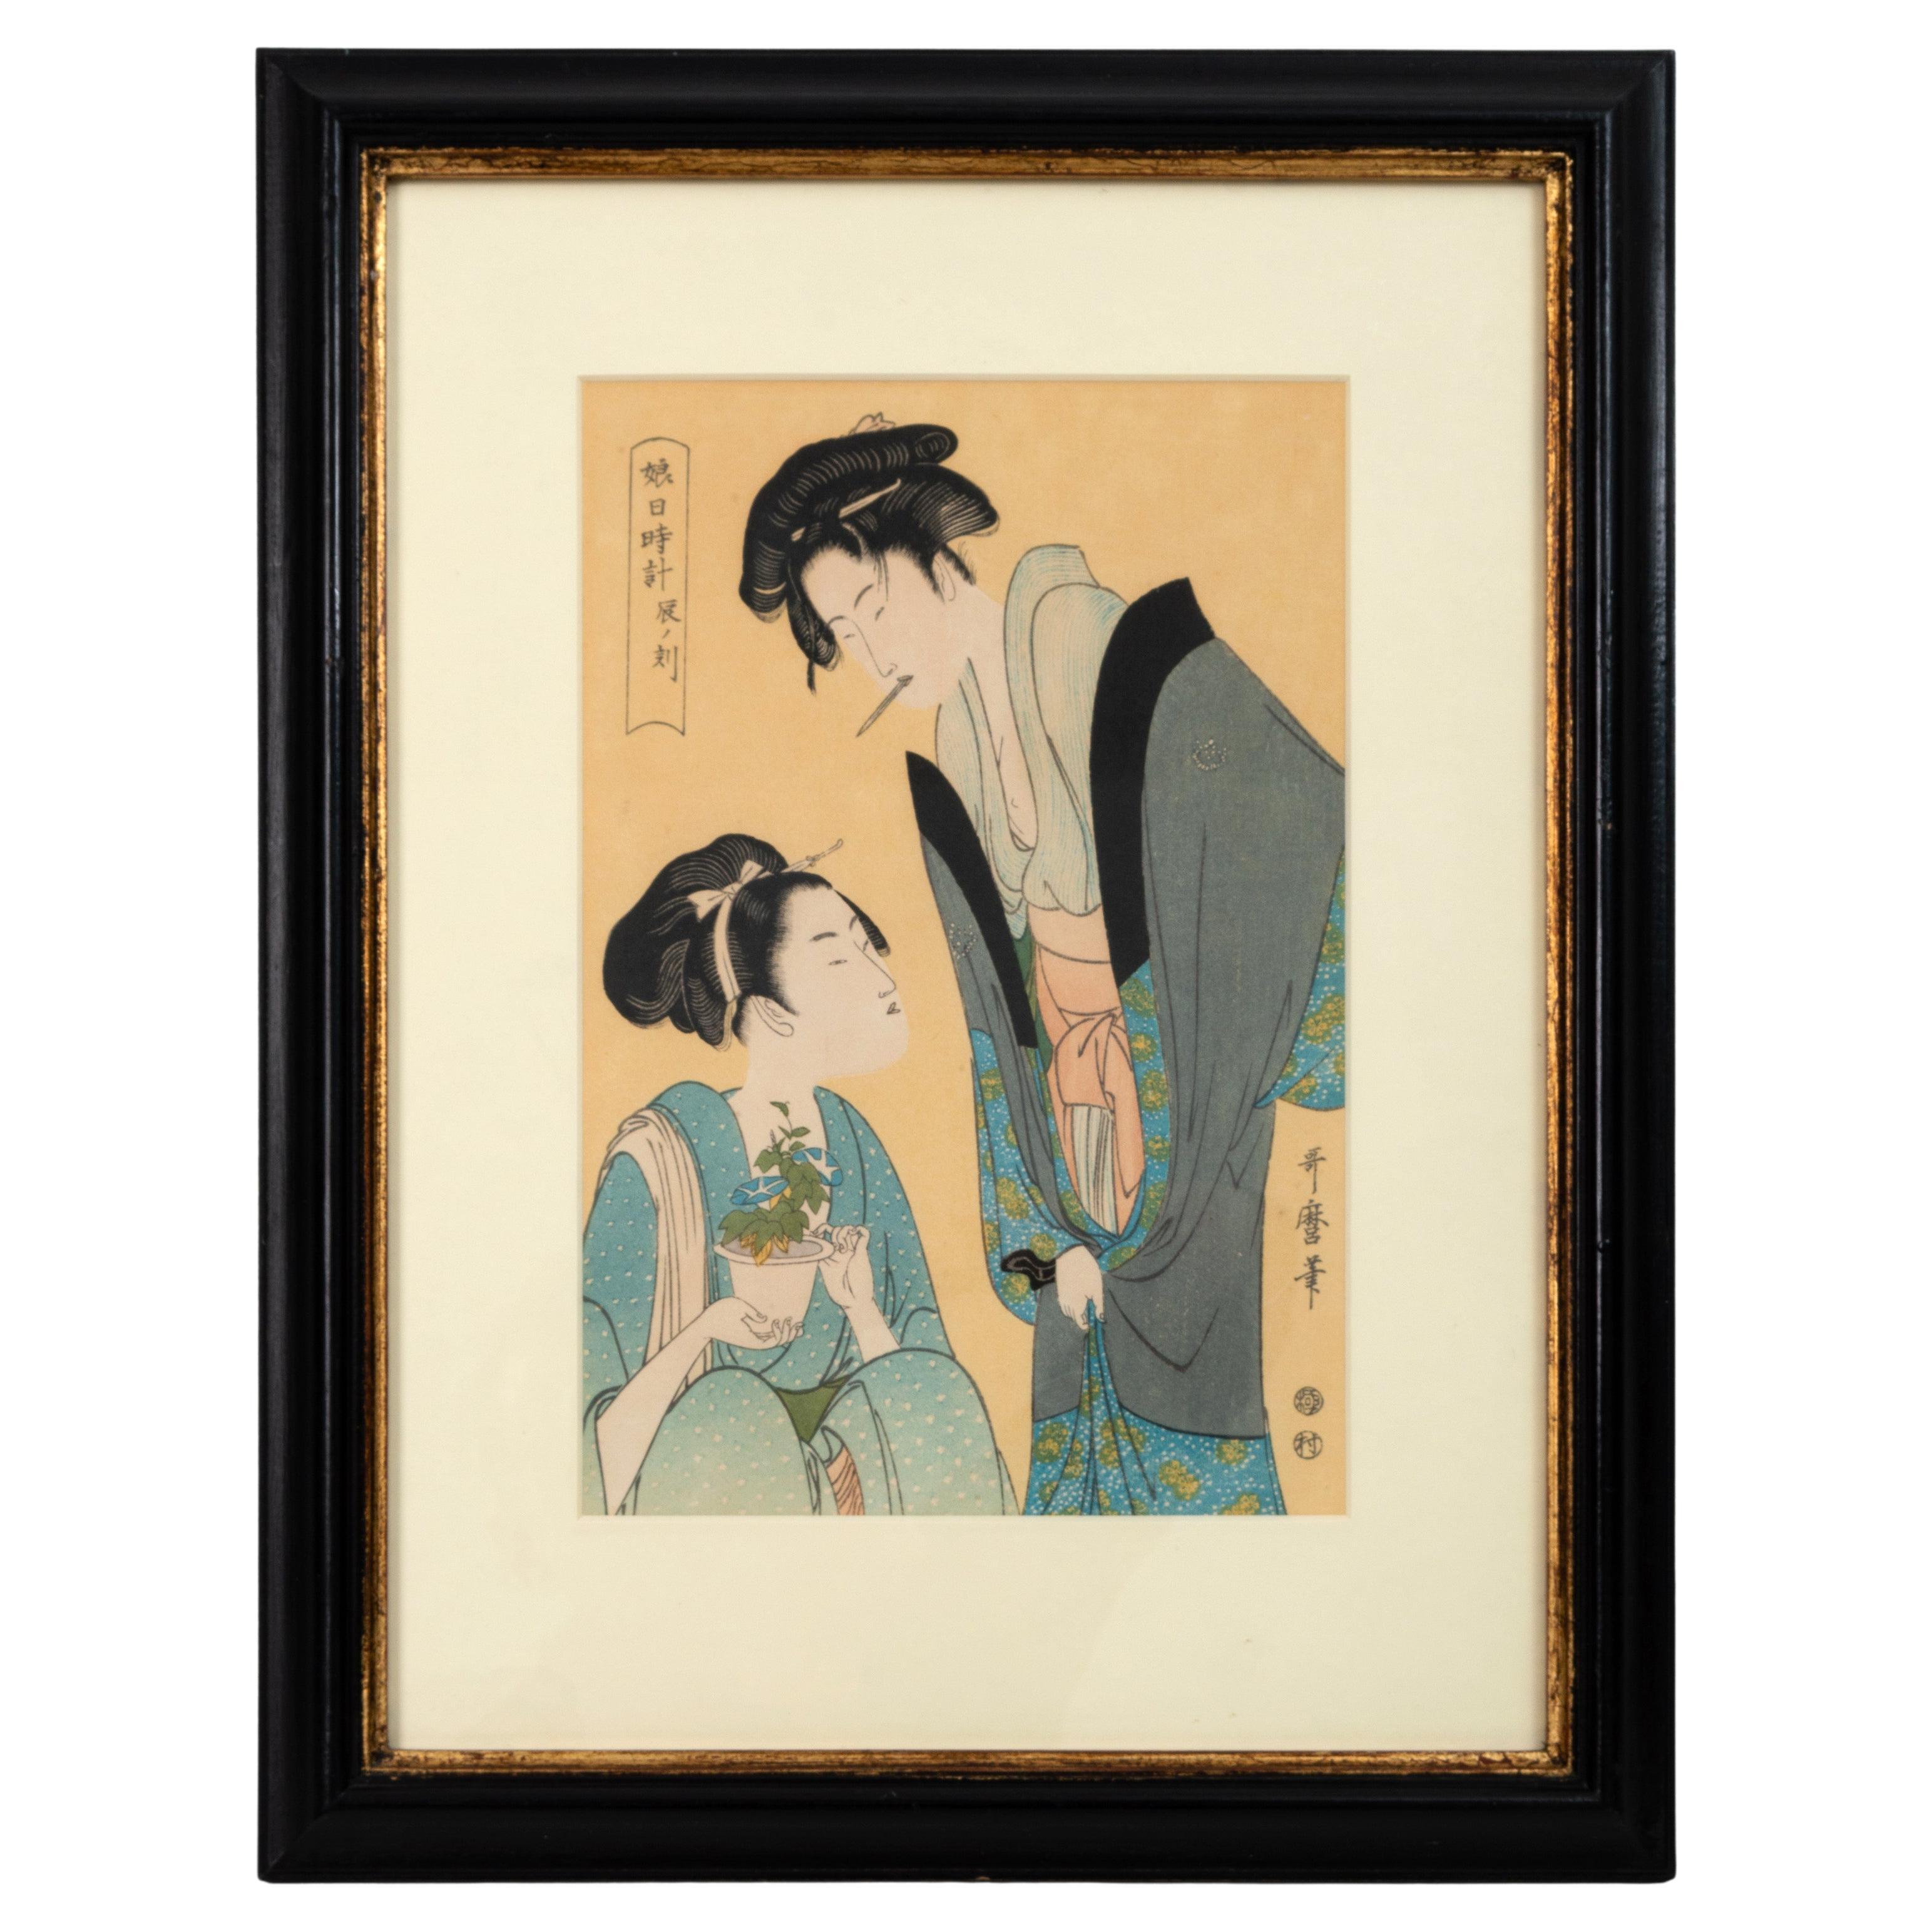 Japanischer Holzschnitt mit Hofesans, Kitagawa Utamaro, aus dem frühen 20. Jahrhundert